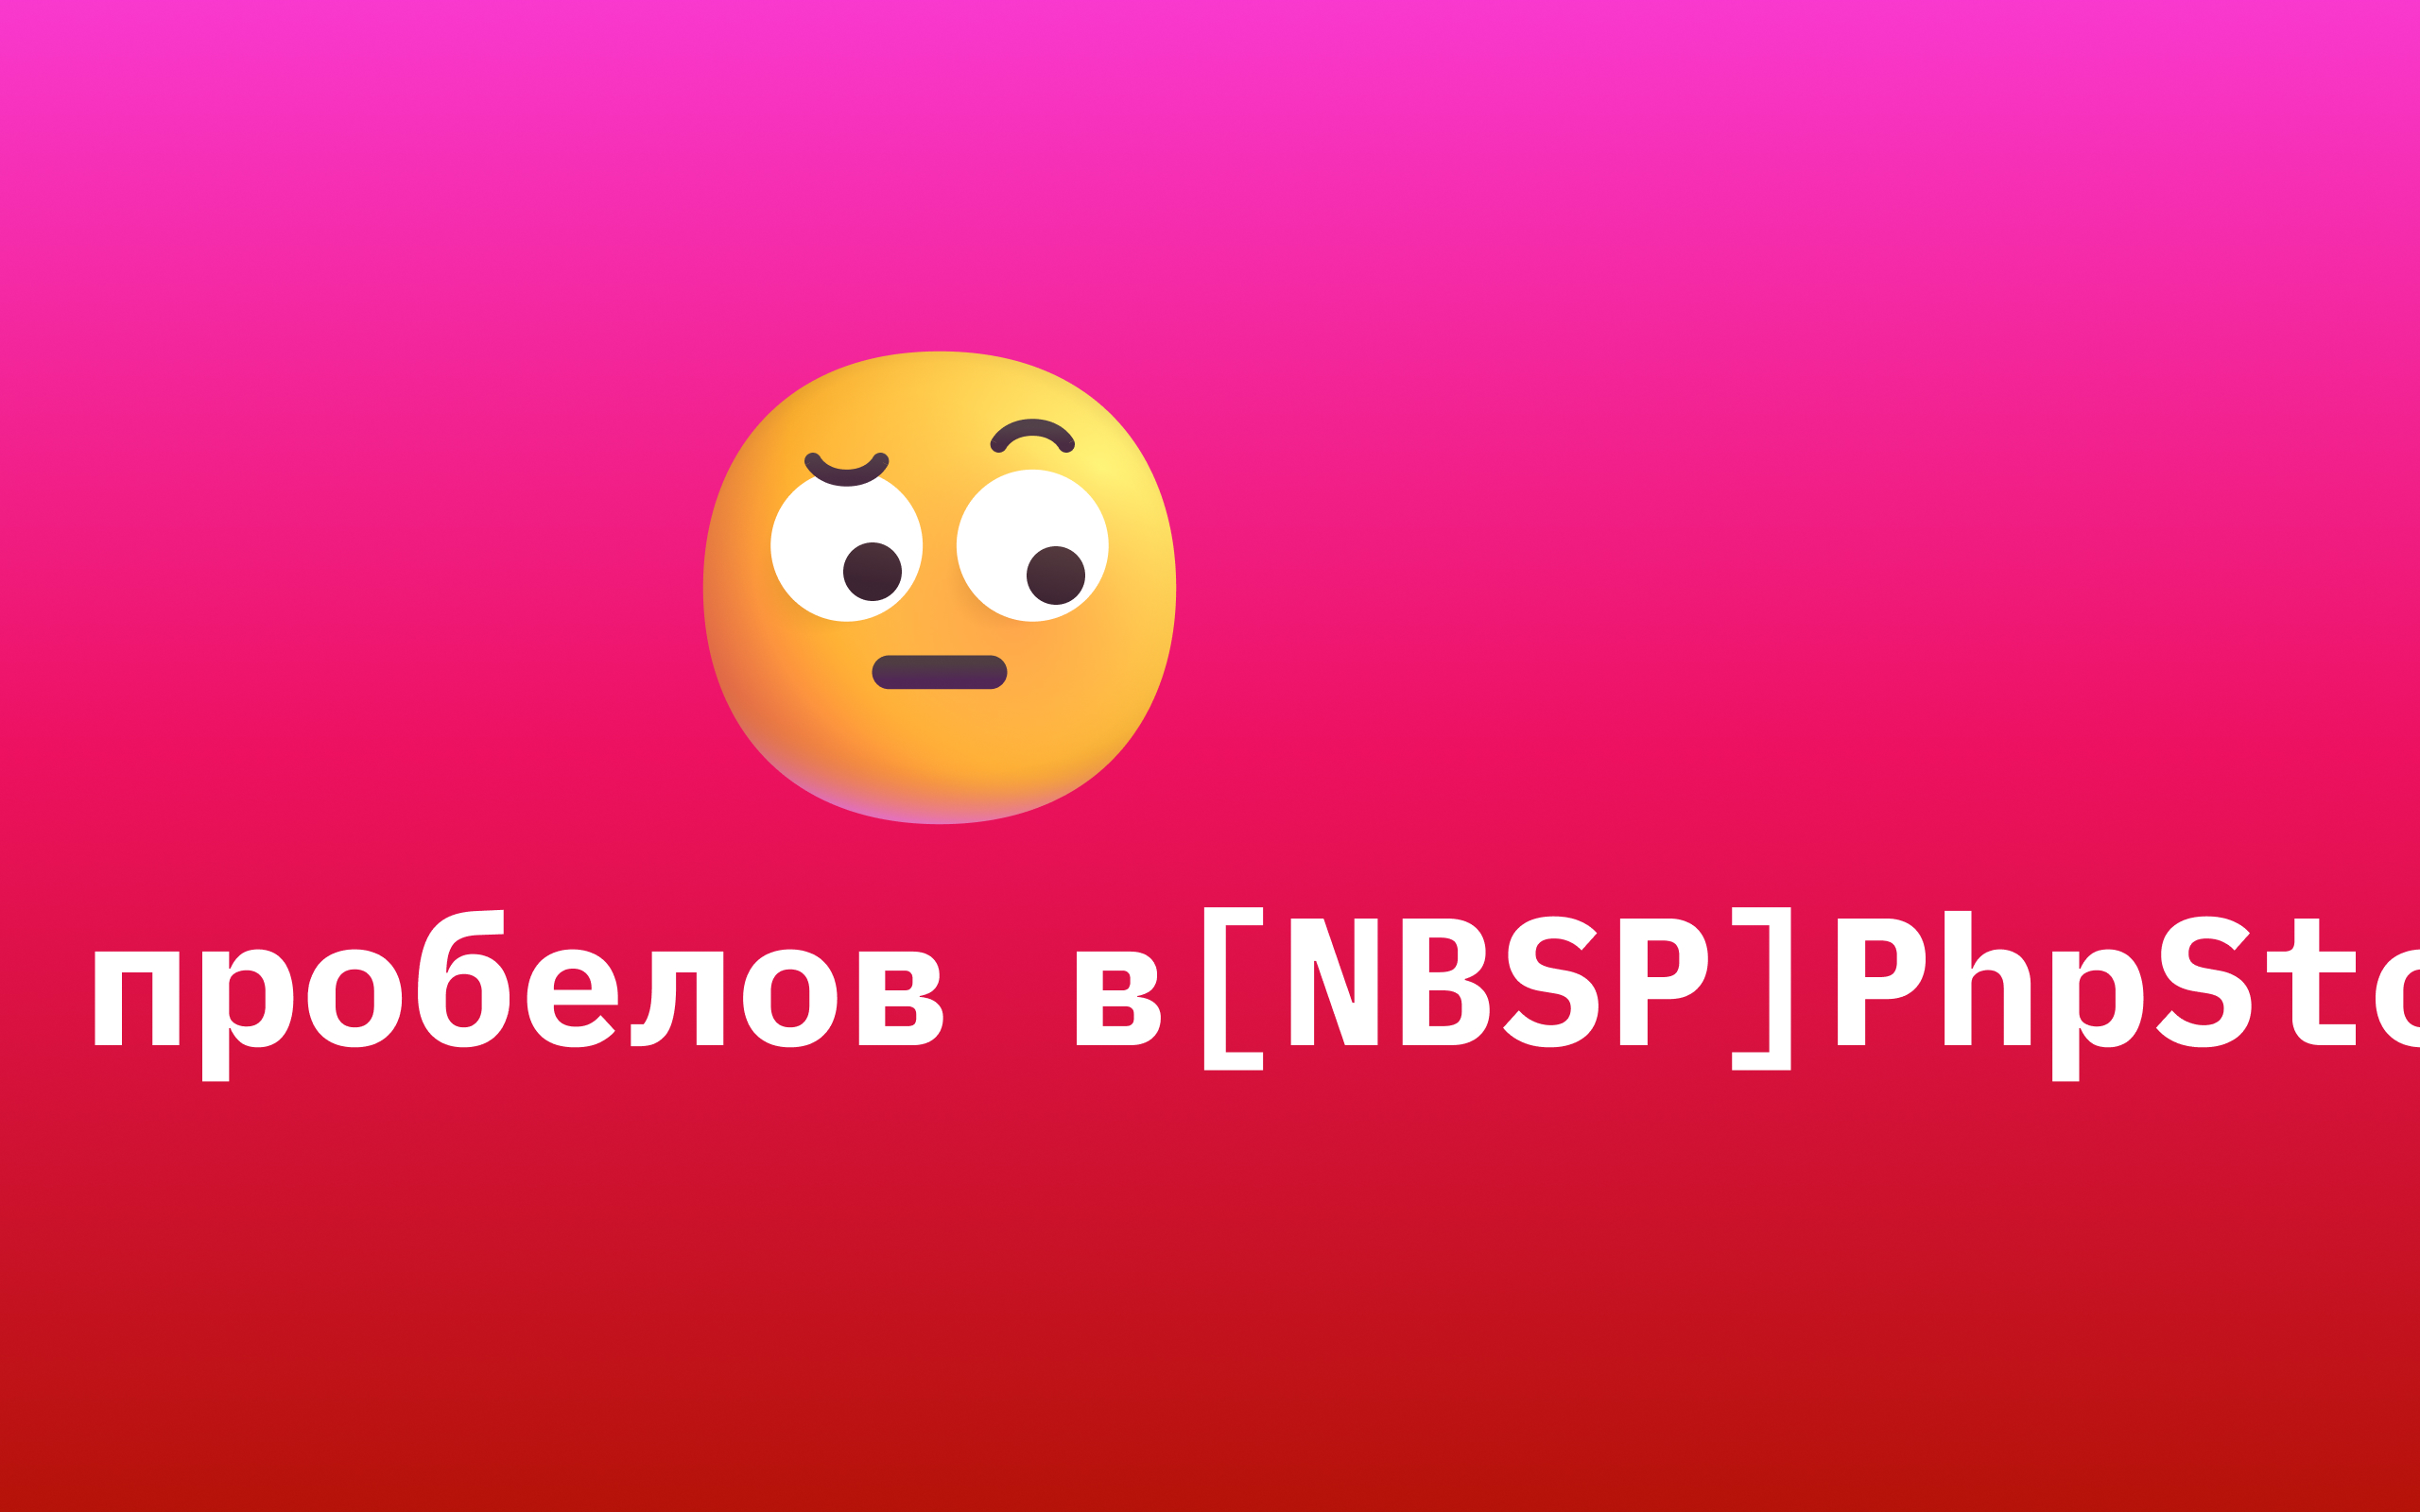 Символы [NBSP] вместо неразрывных пробелов в PhpStorm